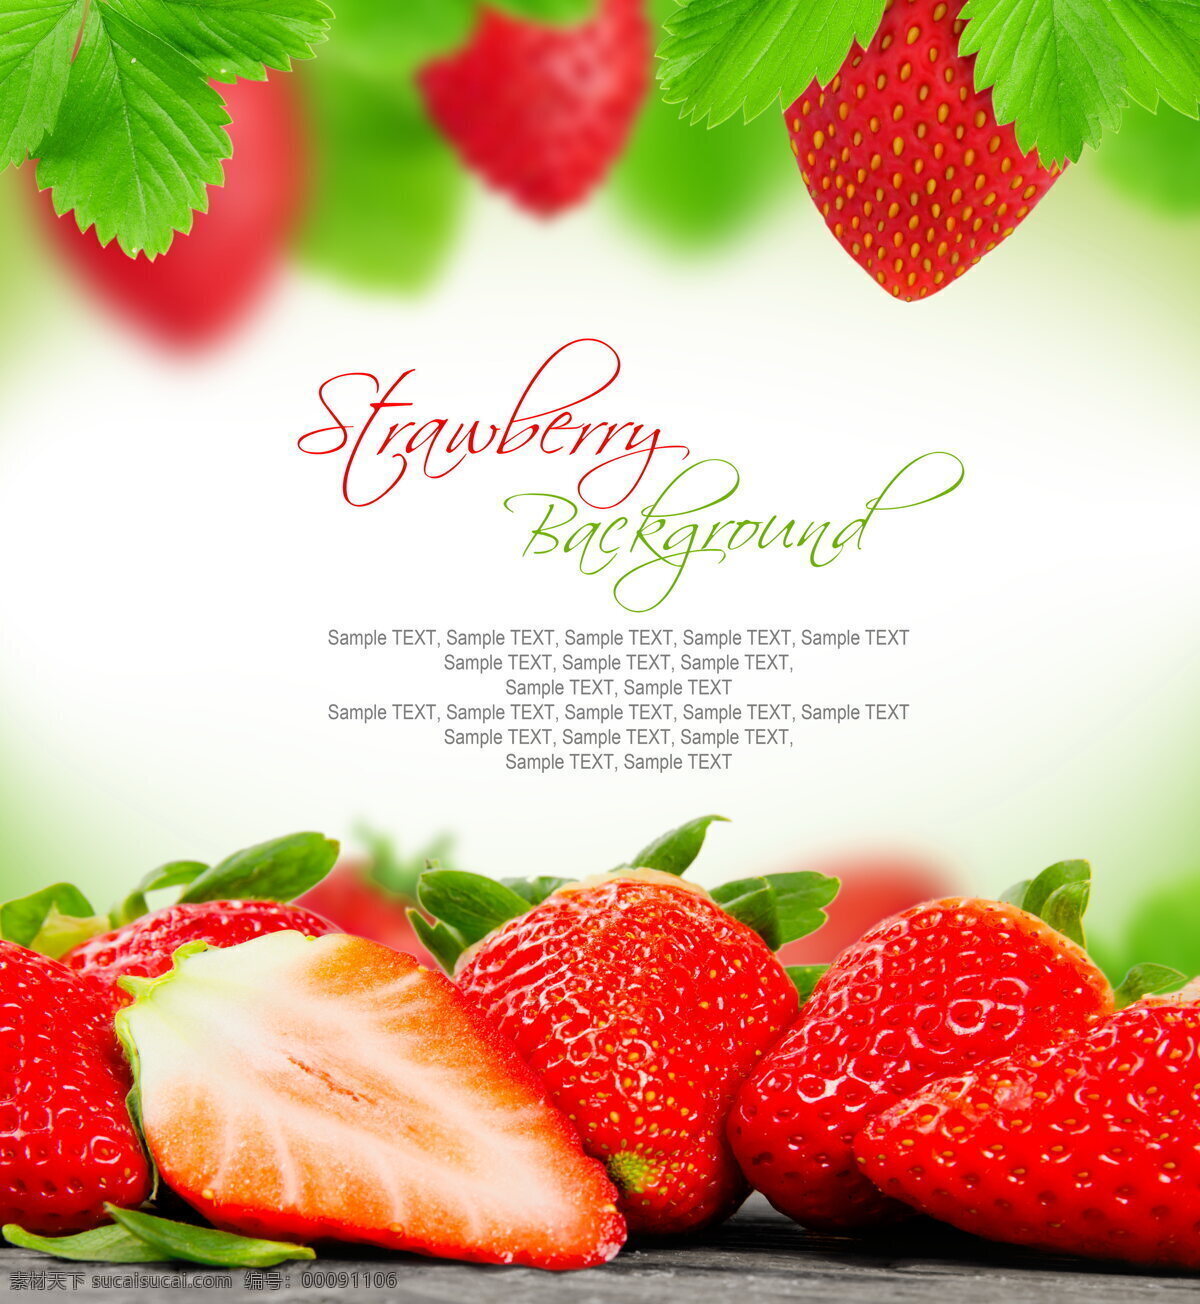 红色草莓背景 红色 草莓背景 红色草莓 草莓 红色水果 新鲜 水果背景 新鲜水果 水果 美食 食物背景 背景素材 底纹边框 背景底纹